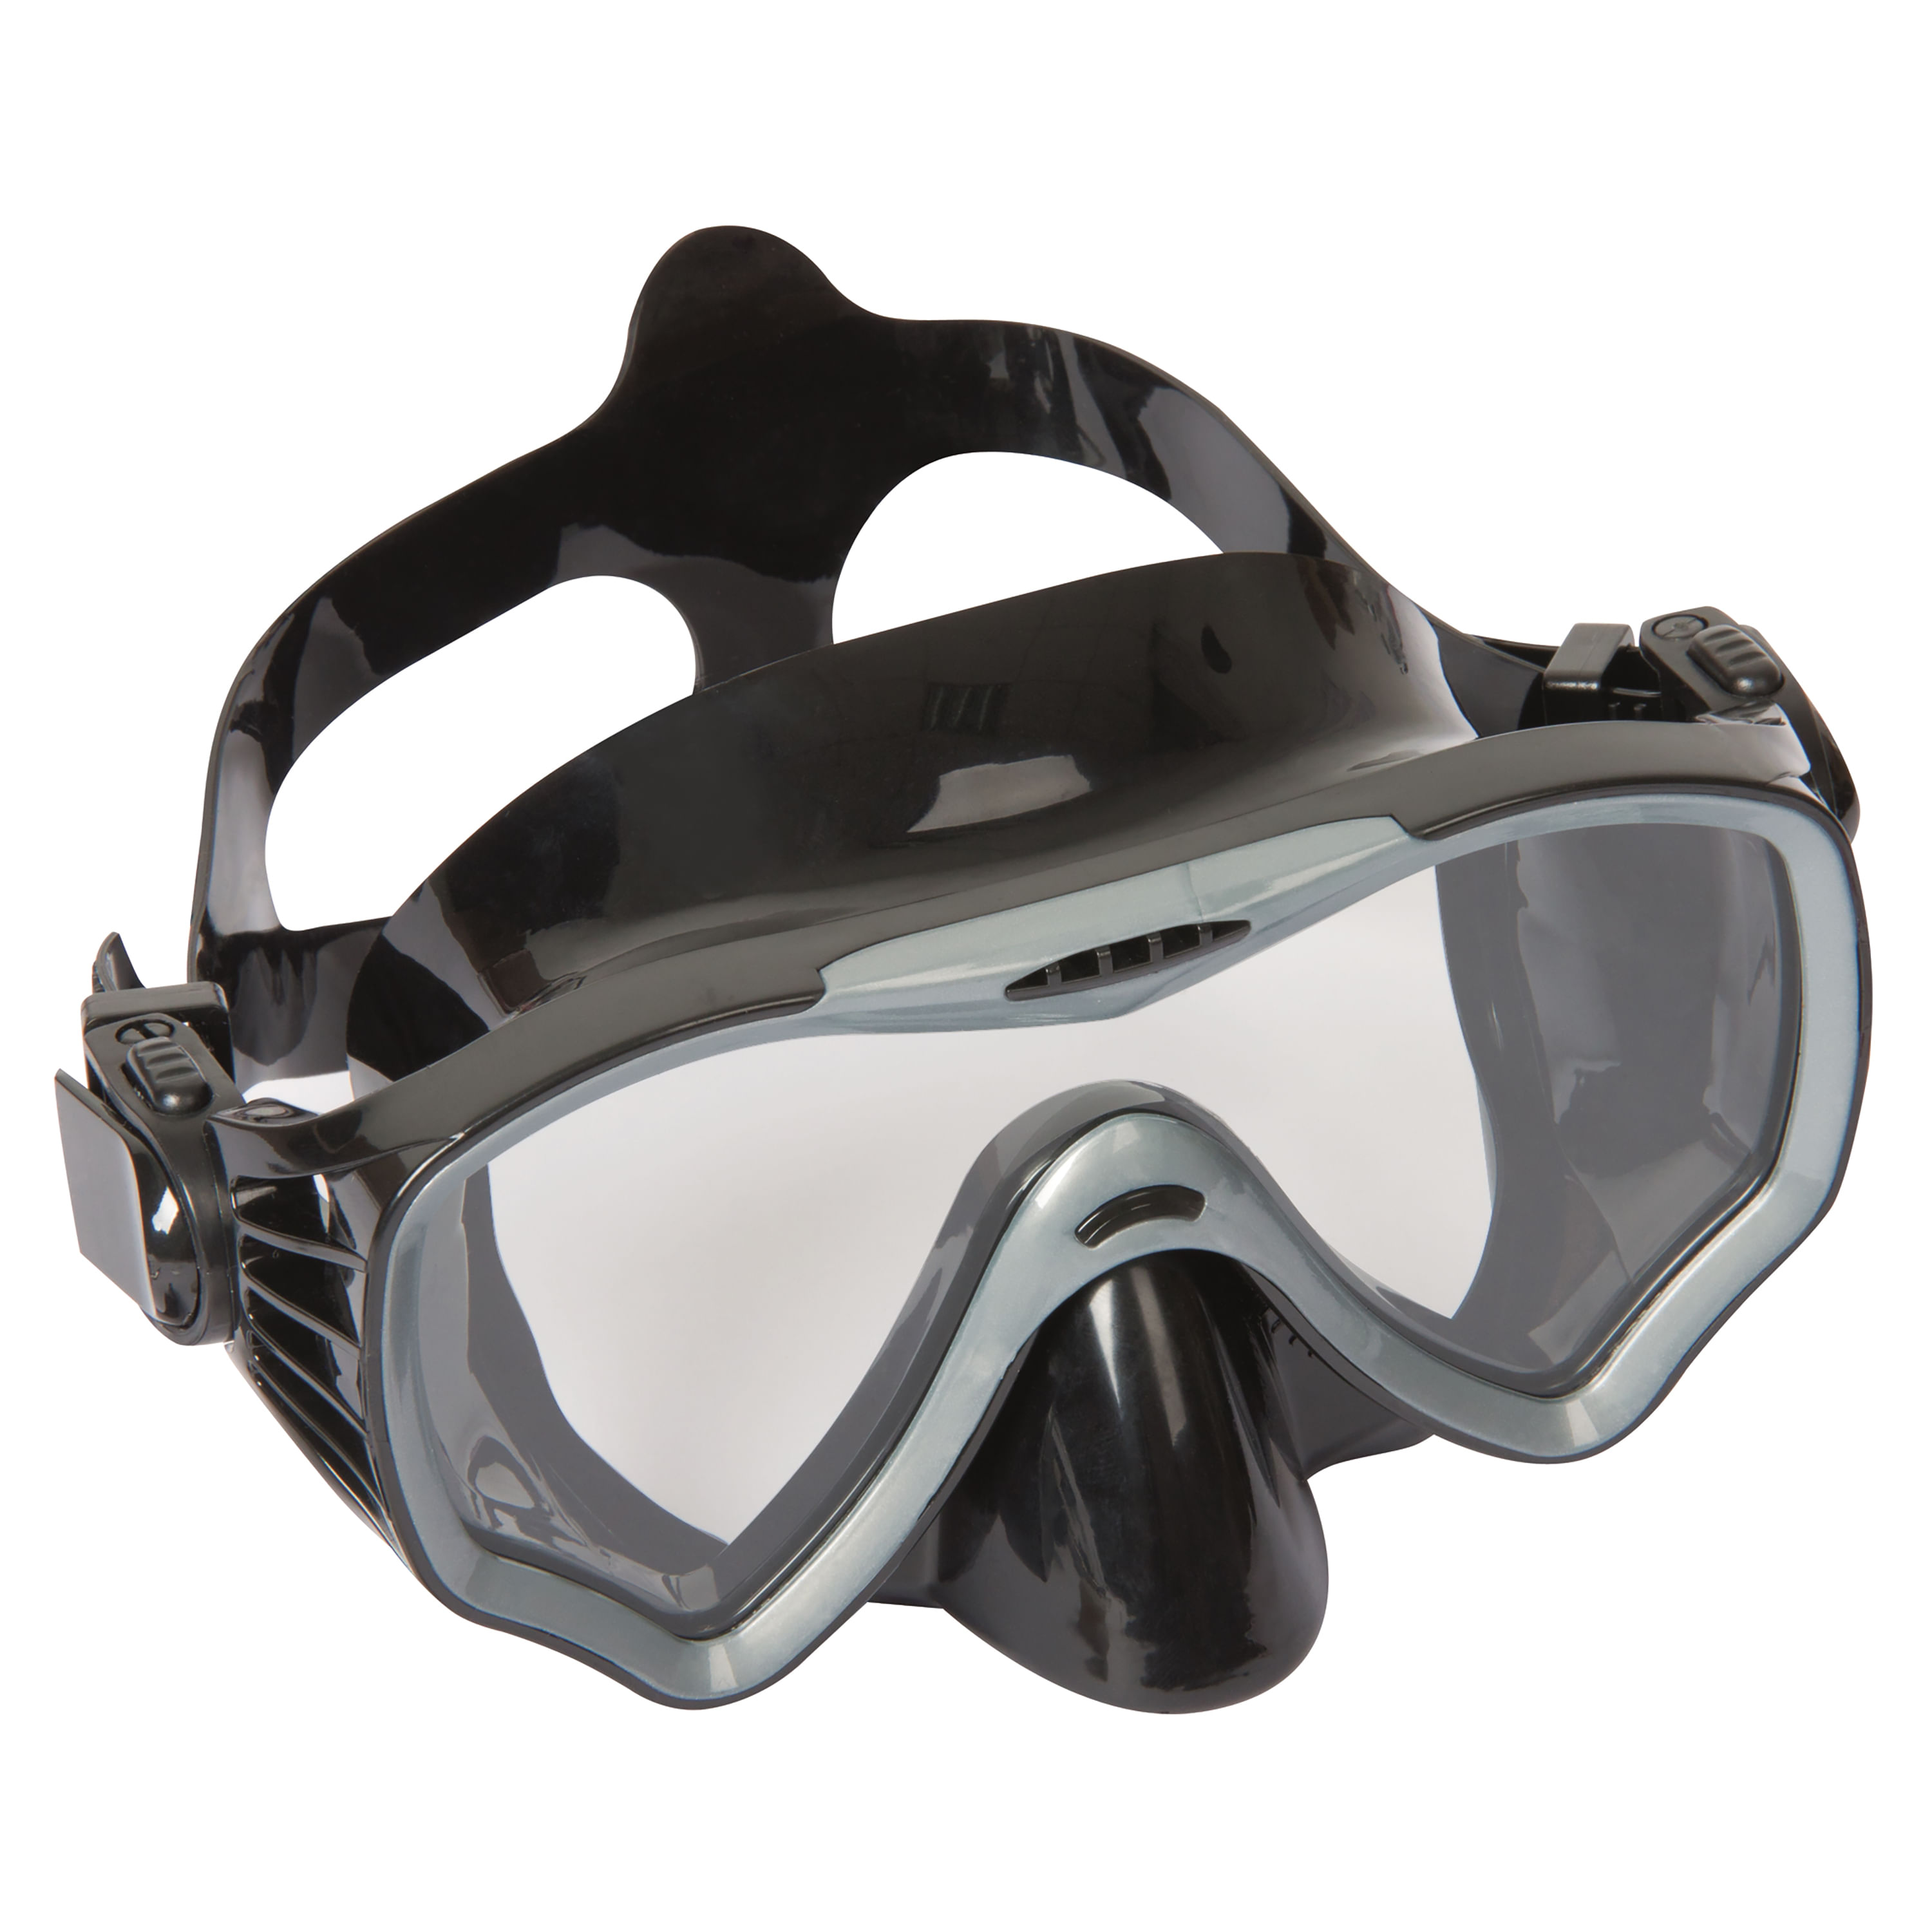 ⇒ Comprar Mascara buceo con snorkel bestway plastico lil animal 24059 ▷ Más  de 200 tiendas ✔️